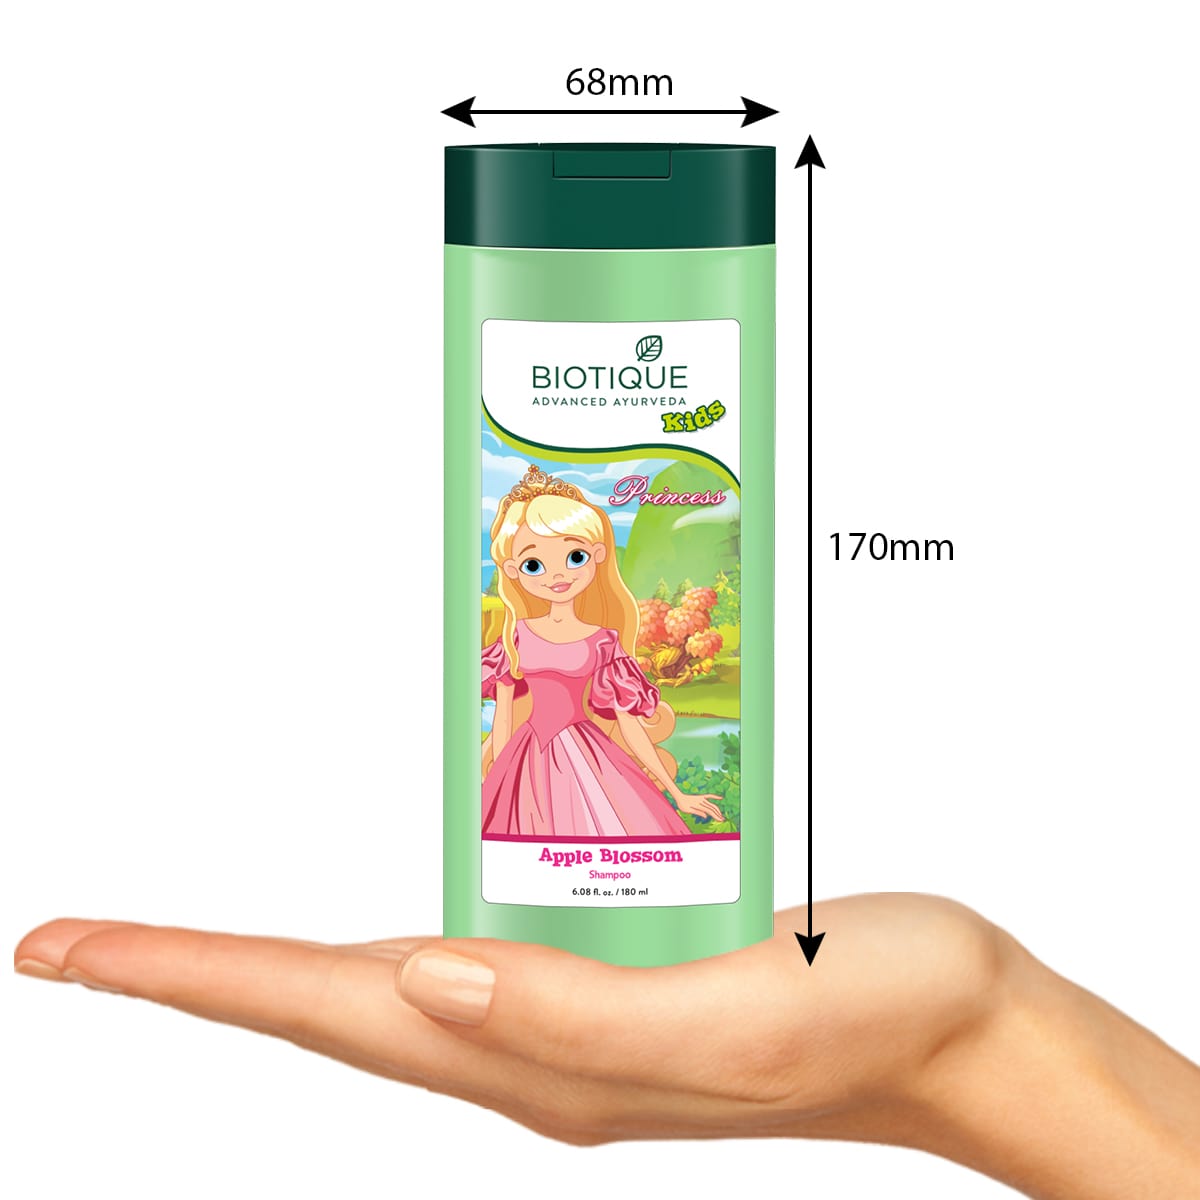 Apple Blossom Shampoo for-Princess-180ml